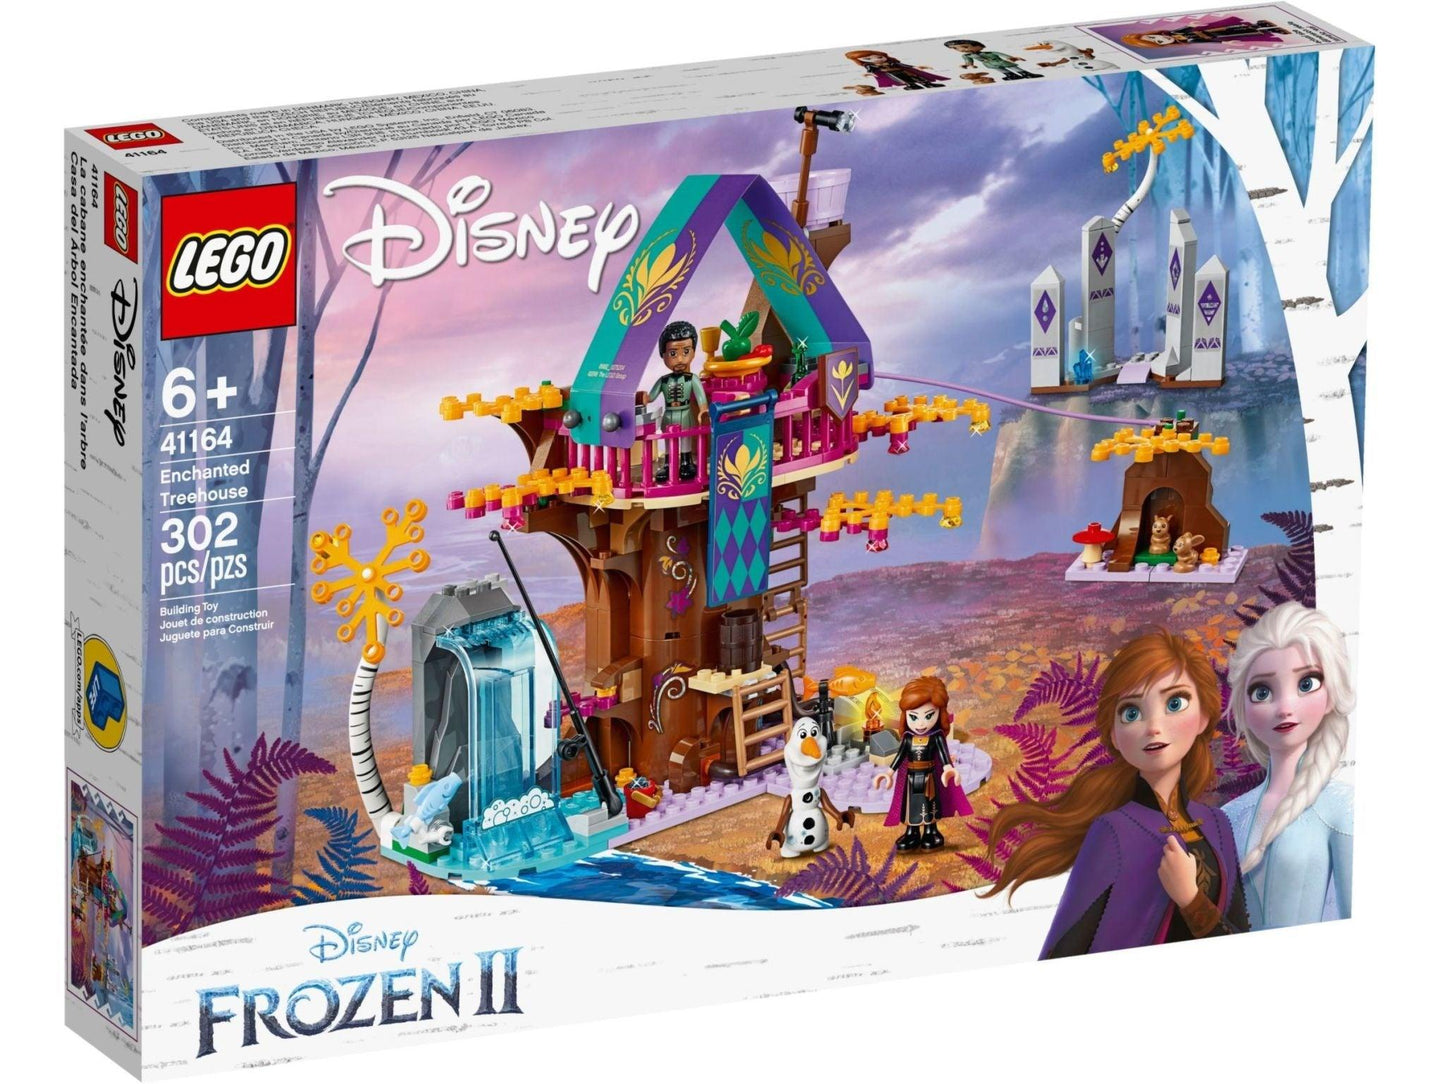 LEGO Frozen Betoverd boomhuis 41164 Disney | 2TTOYS ✓ Official shop<br>